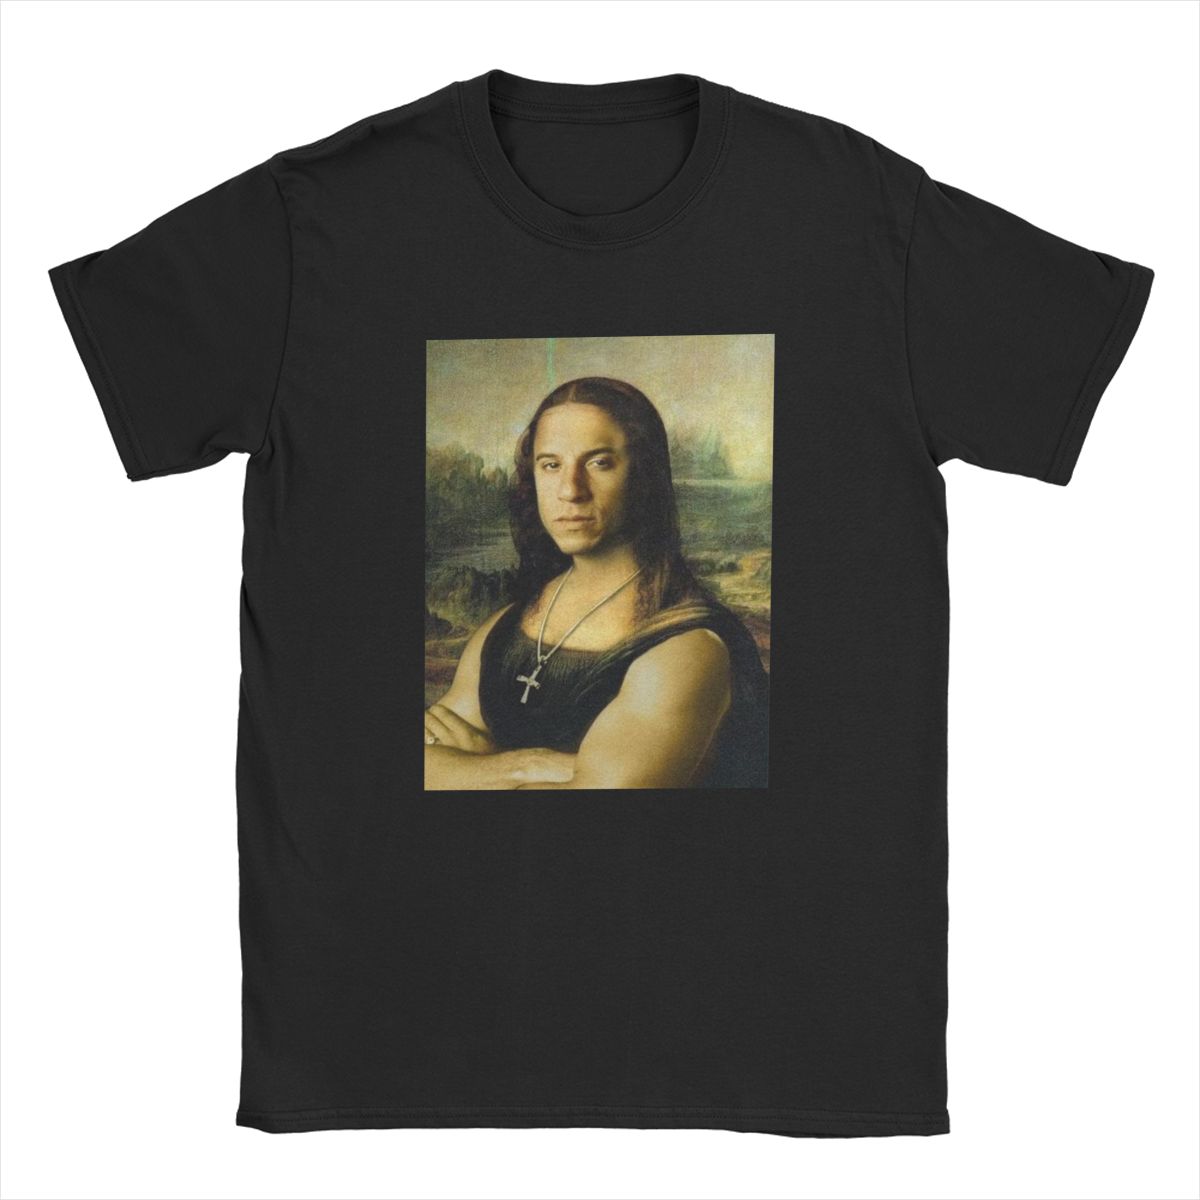 Tee Shirt Mona Lisa Vinz Diesel